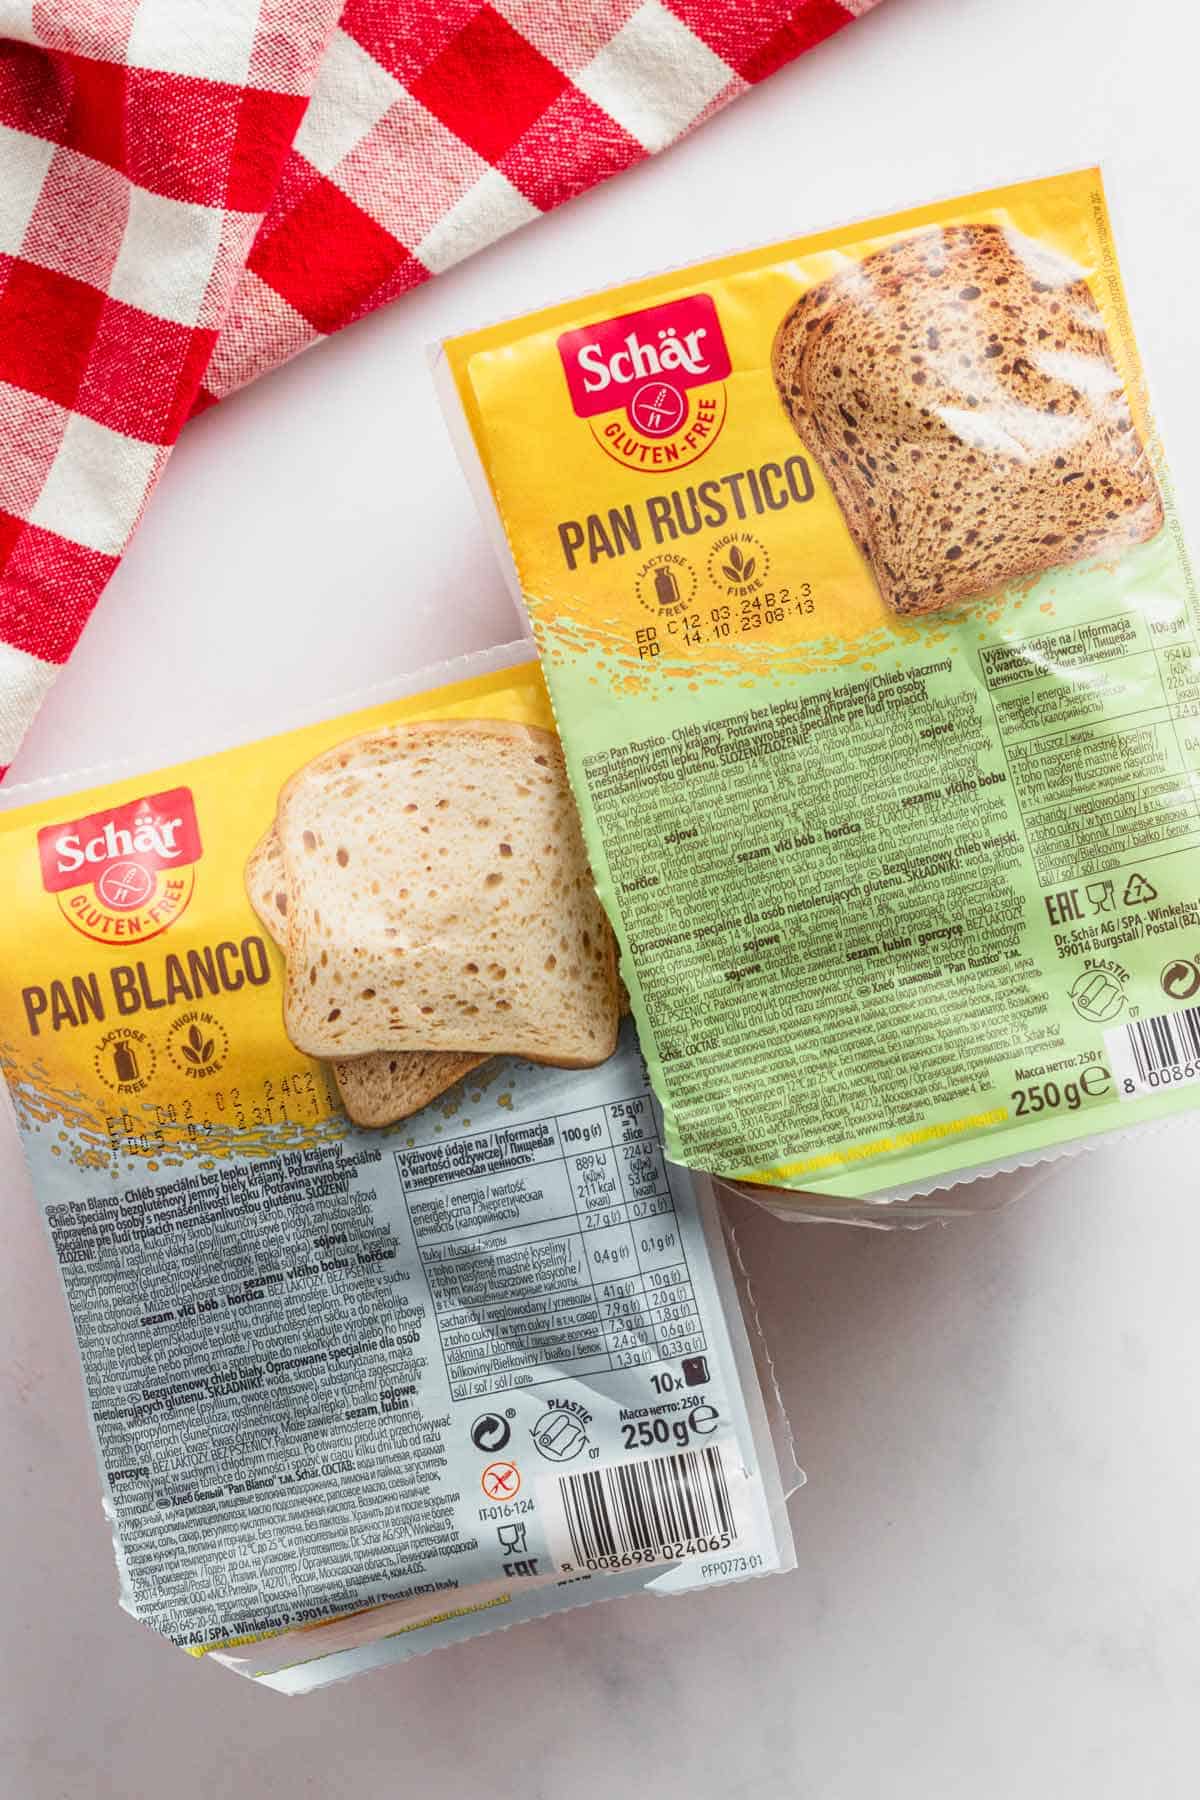 schar brand gluten free bread packages.